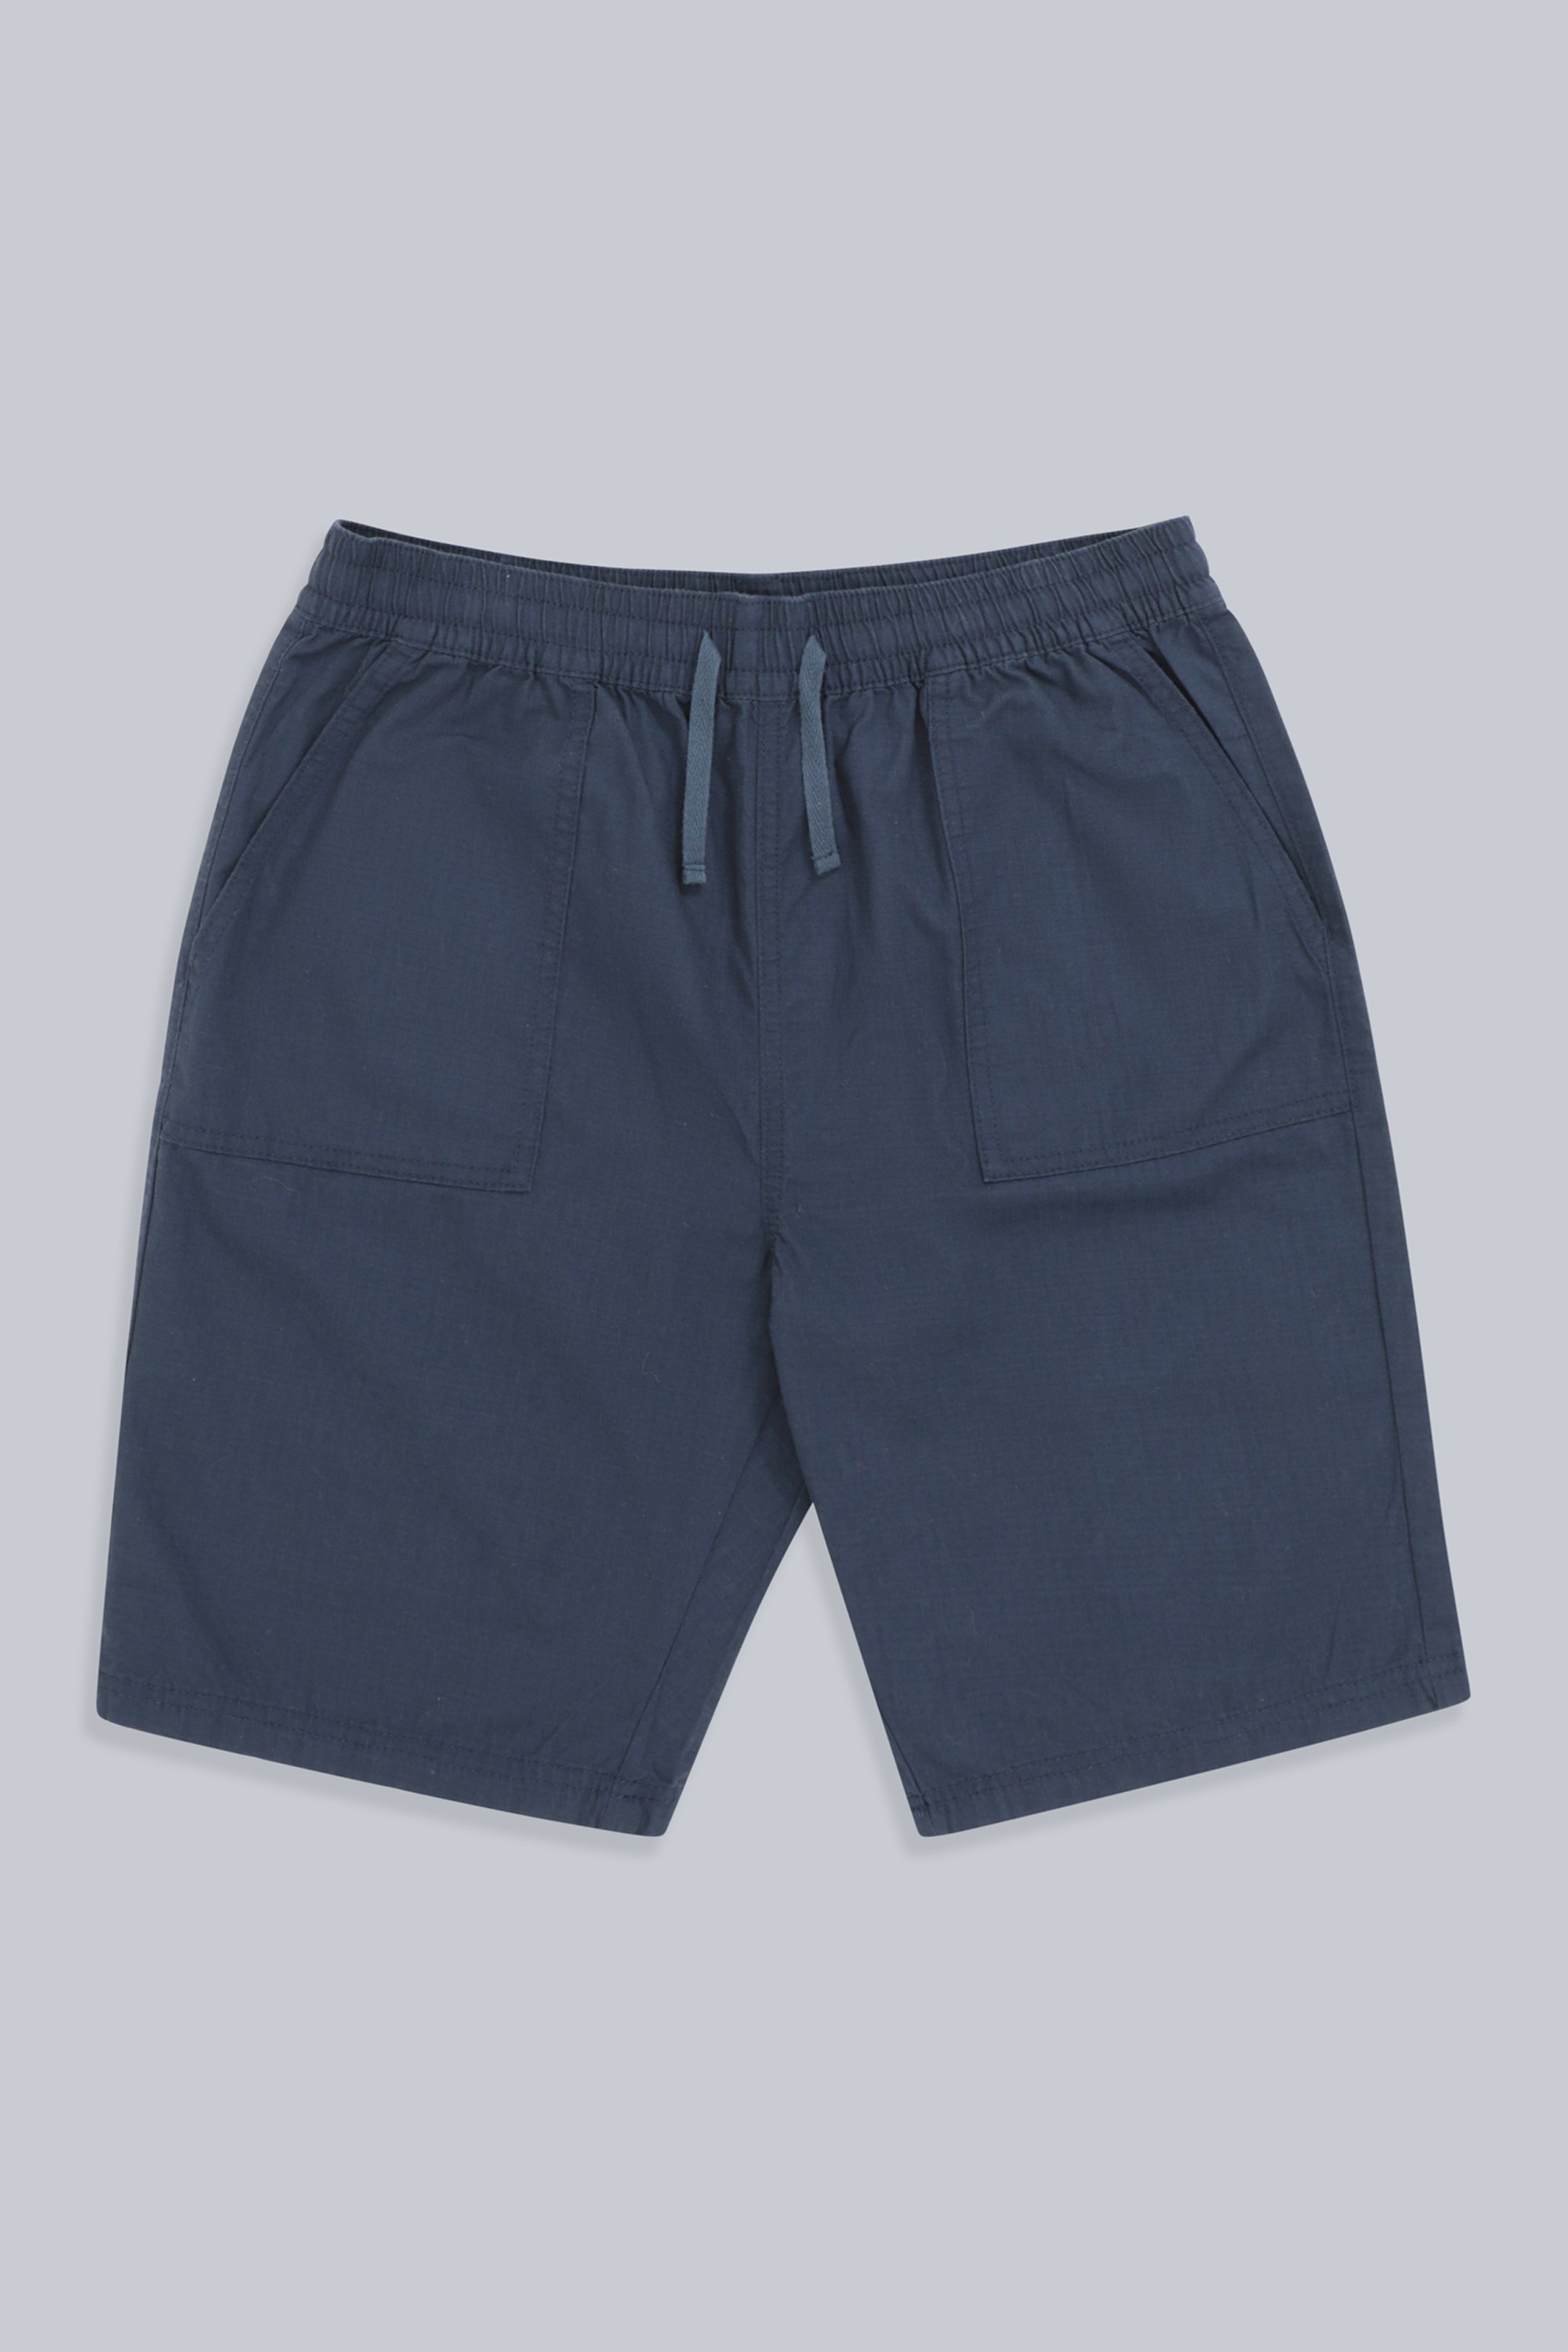 Dillon Mens Organic Shorts - Navy